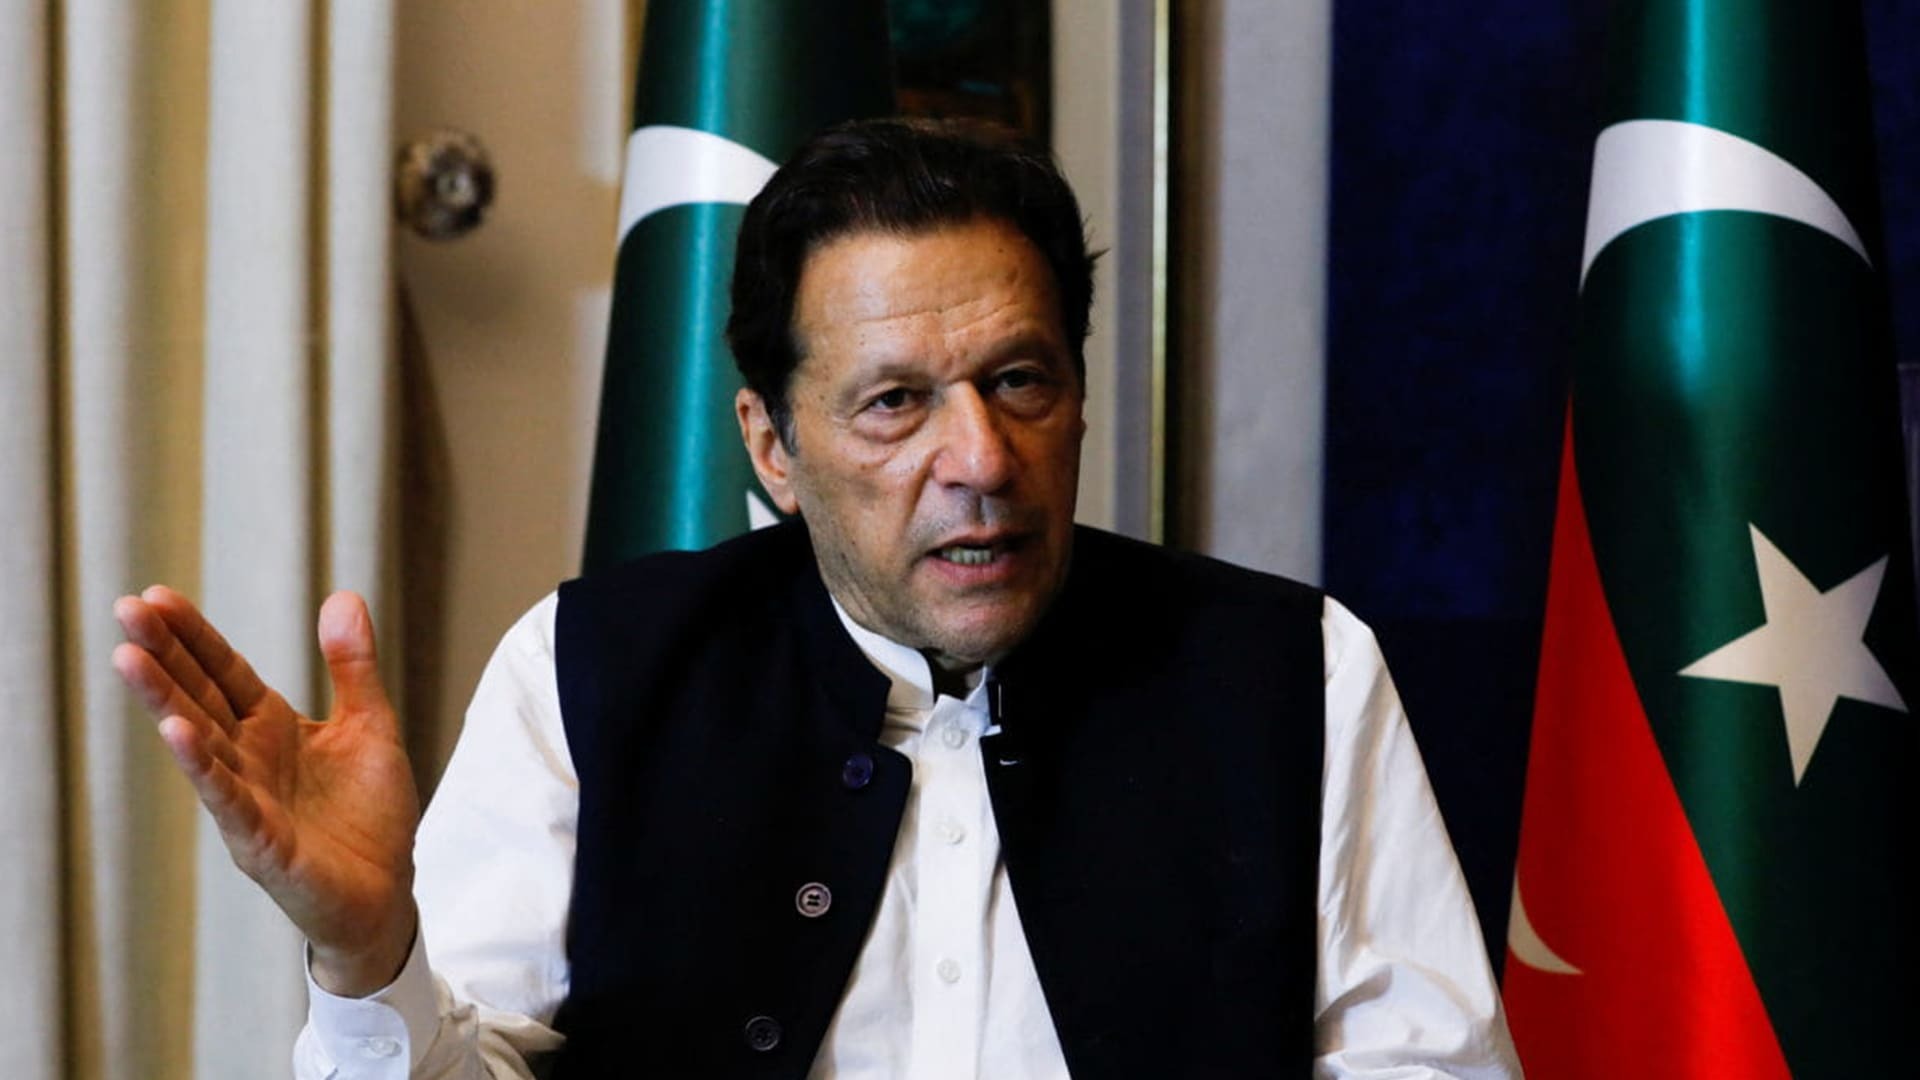 Imran khan article, politician Imran khan, Imran khan Pakistan politician, Pakistan politician